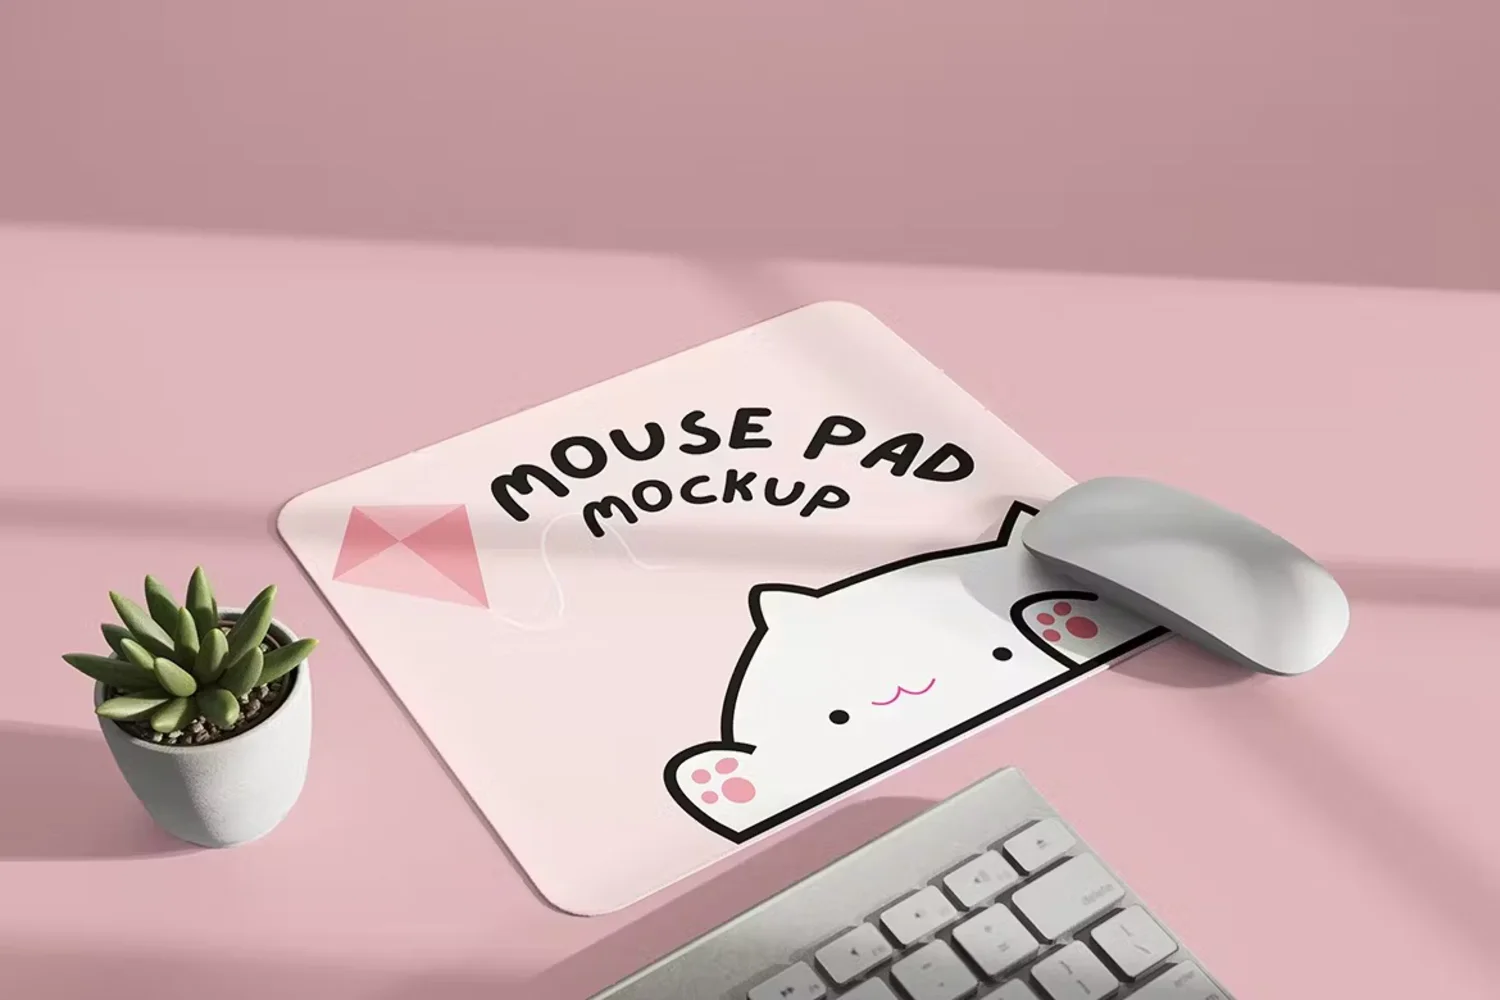 5253 5款鼠标垫设计PSD样机素材 Mousepad Mockup@GOOODME.COM